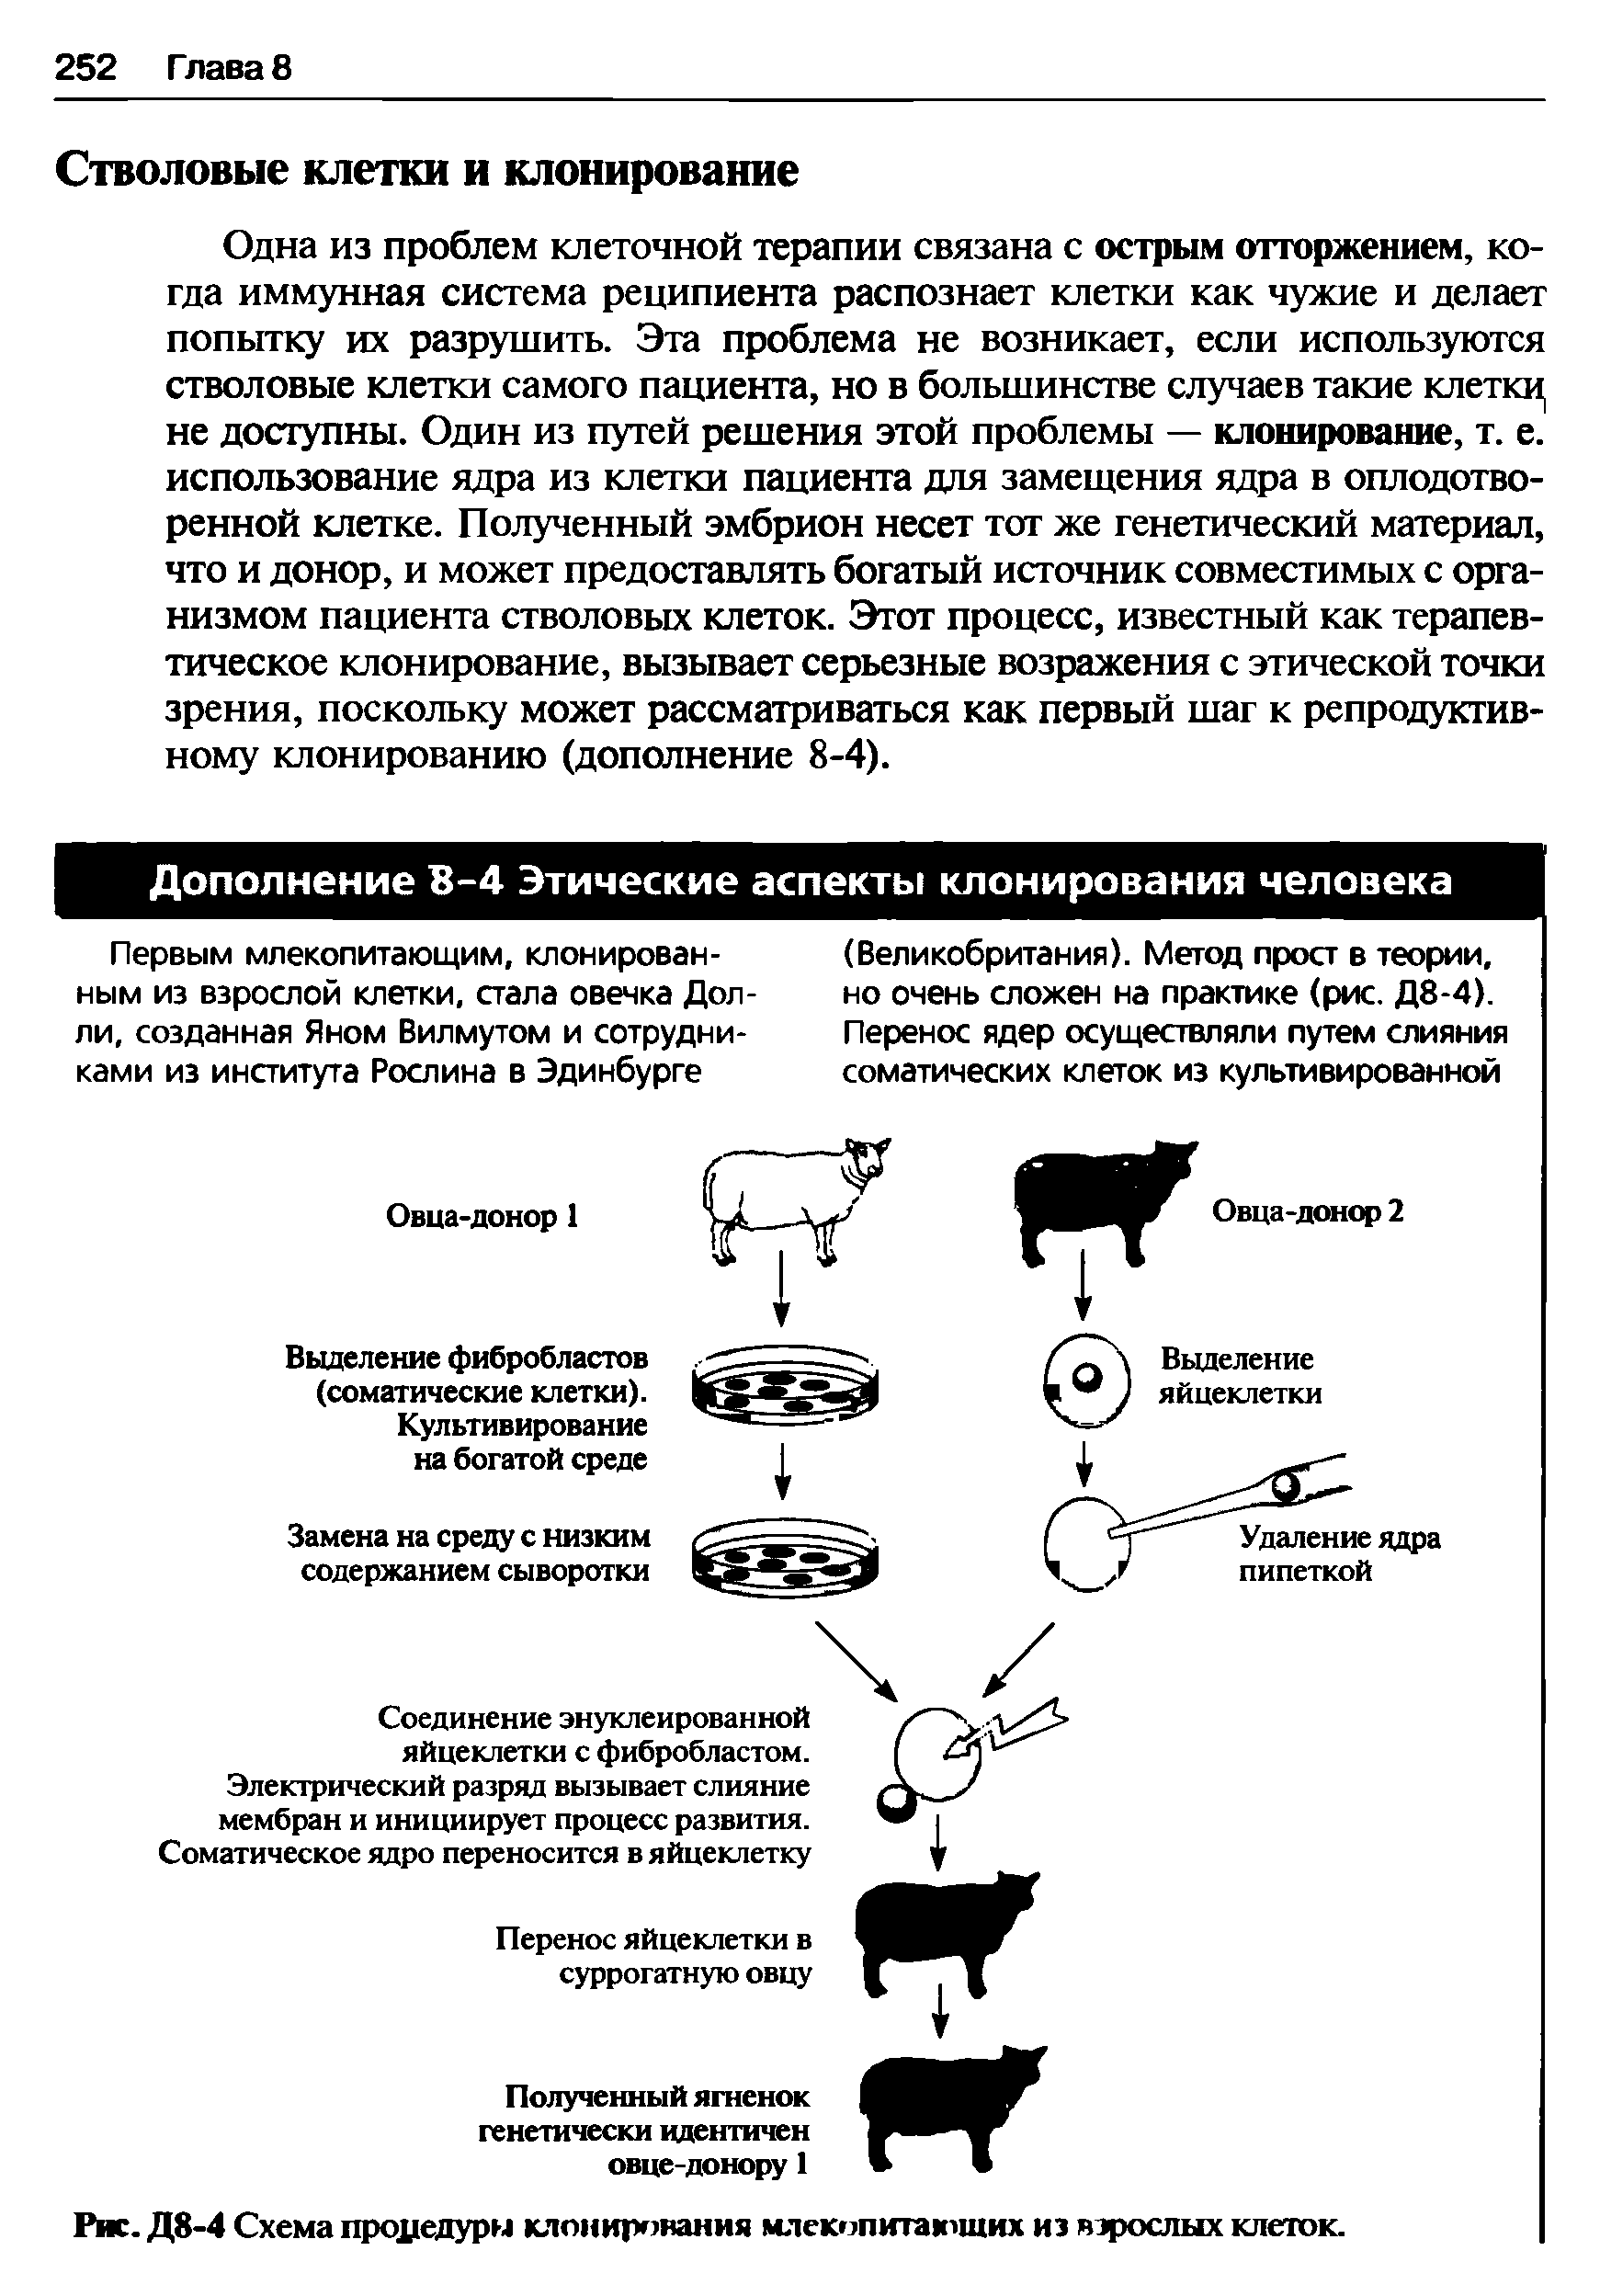 Рис. Д8-4 Схема процедуры клонирования млекопитающих из взрослых клеток.